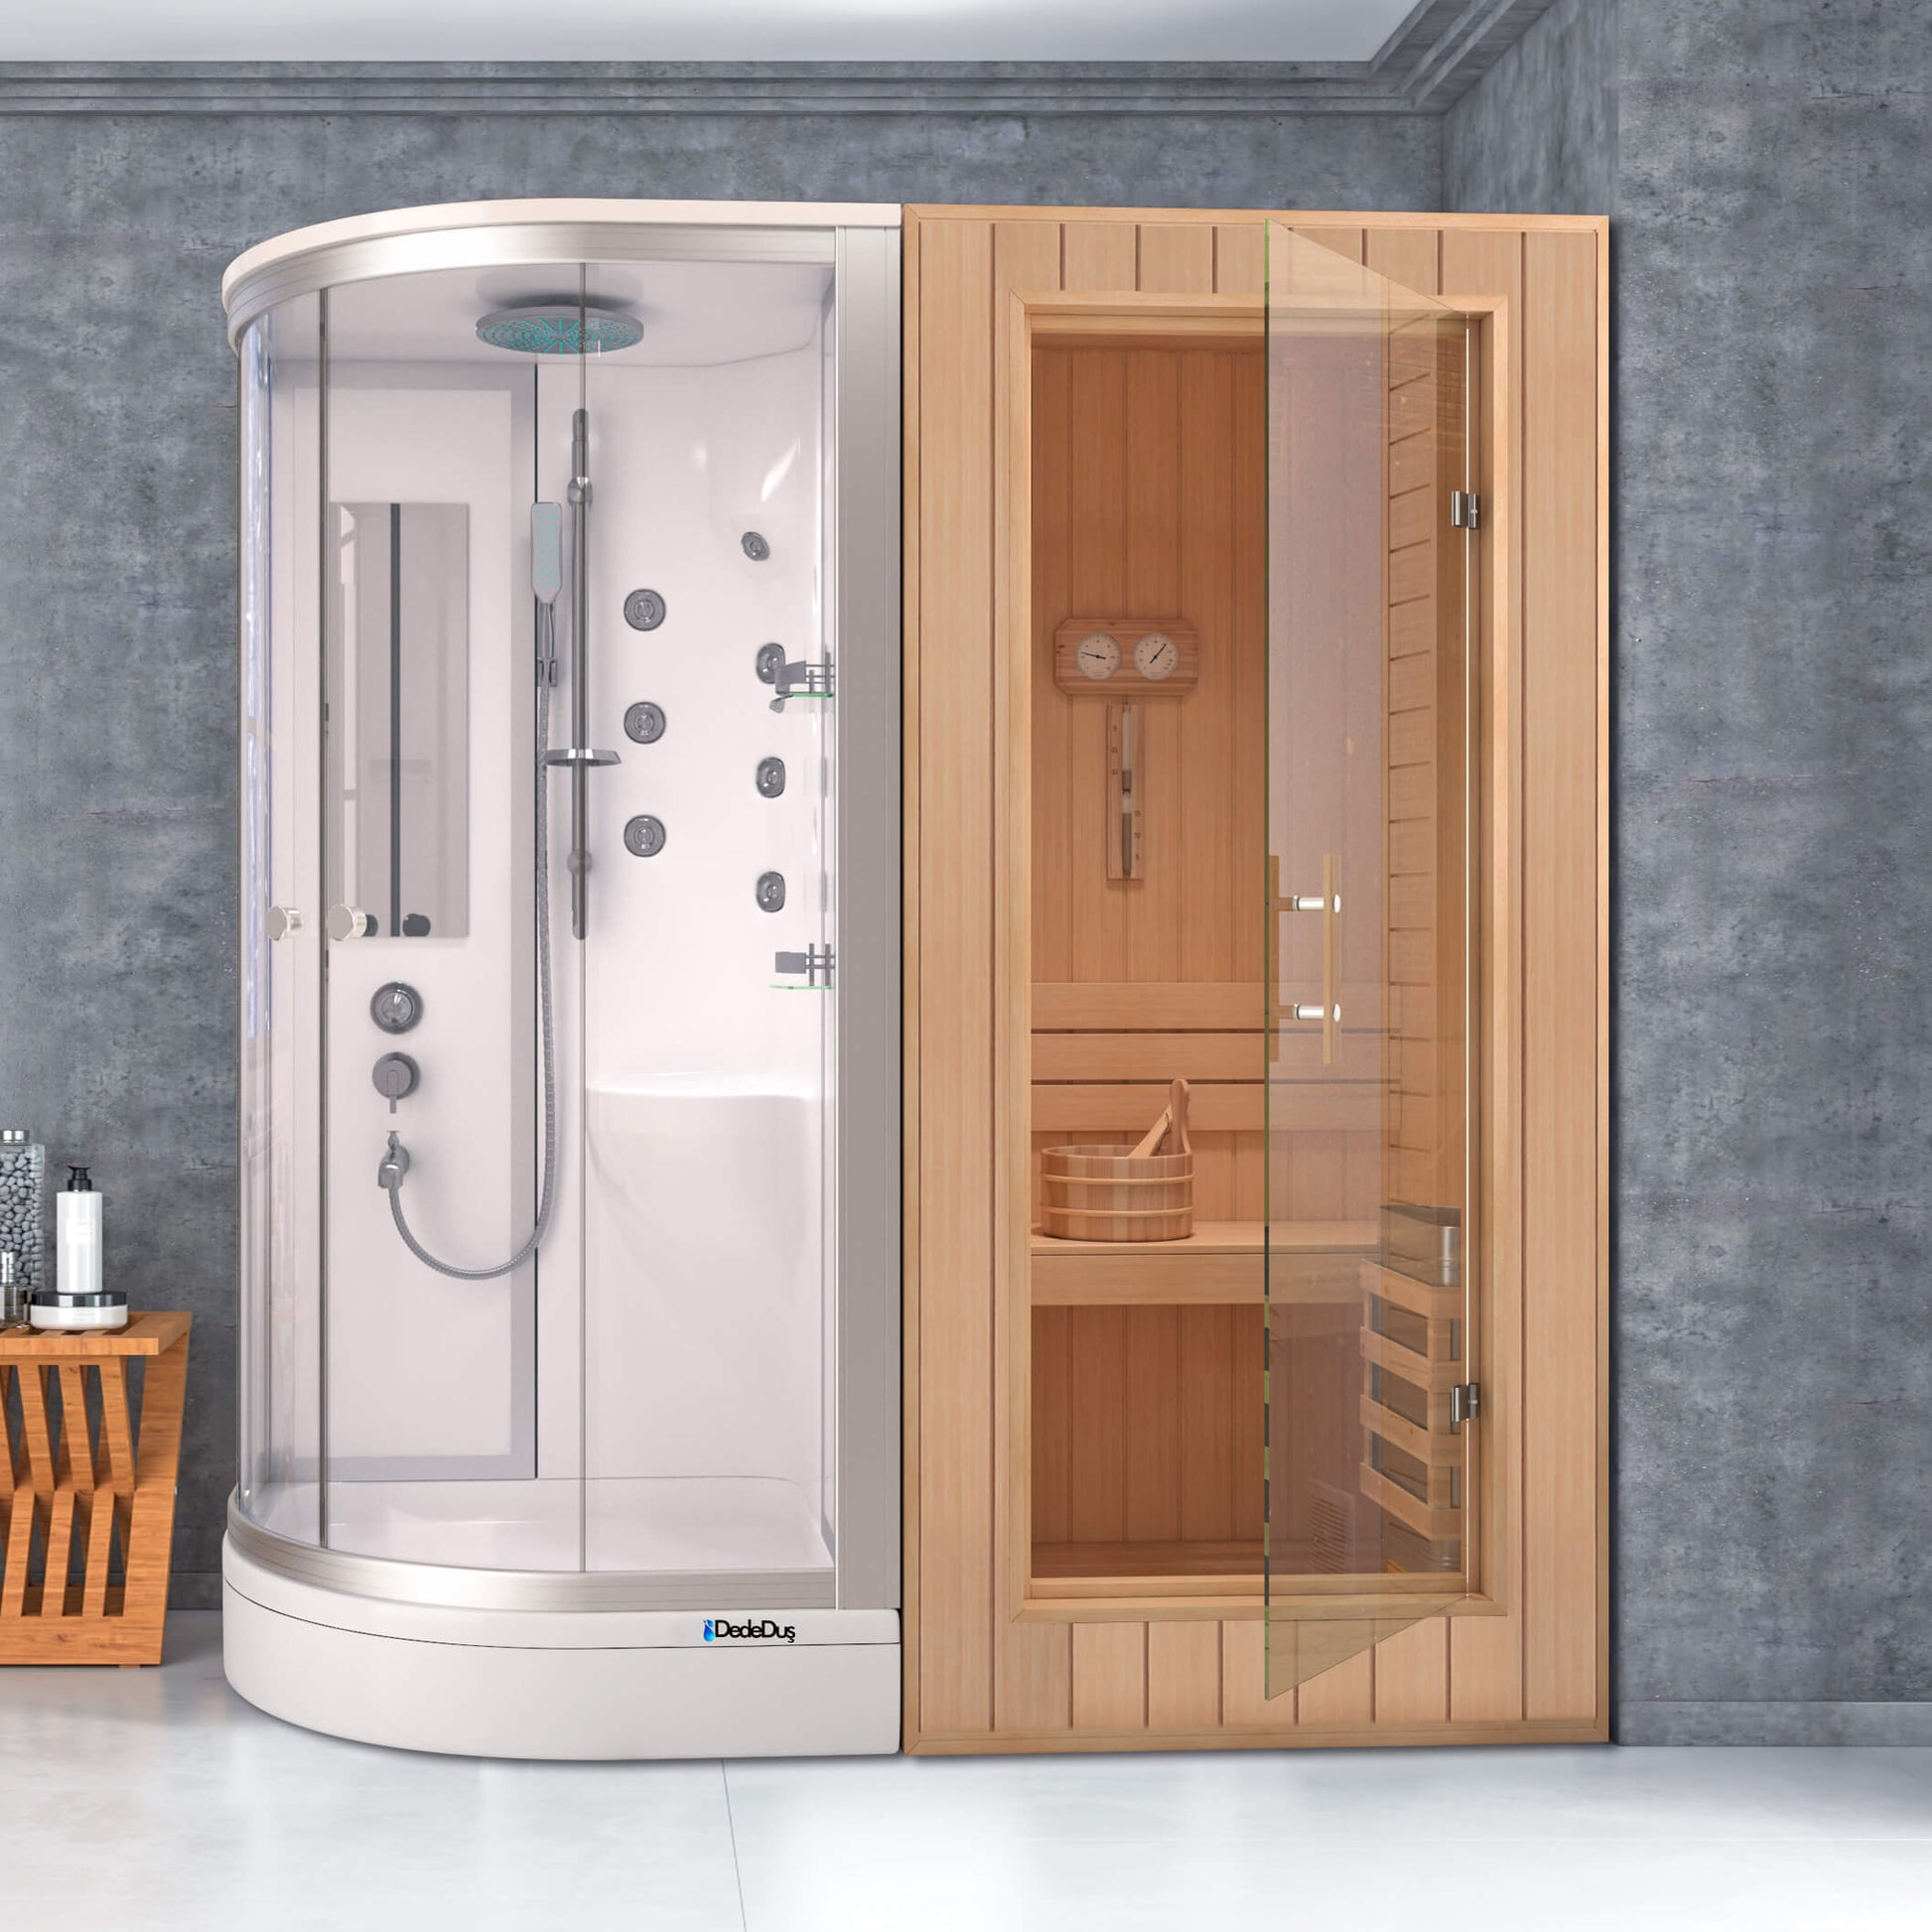 Beyaz asimetrik duş tekneli, kompakt duşakabinli. ev tipi sauna, Dede Duş, Çengelköy, Suadiye, Kadıköy